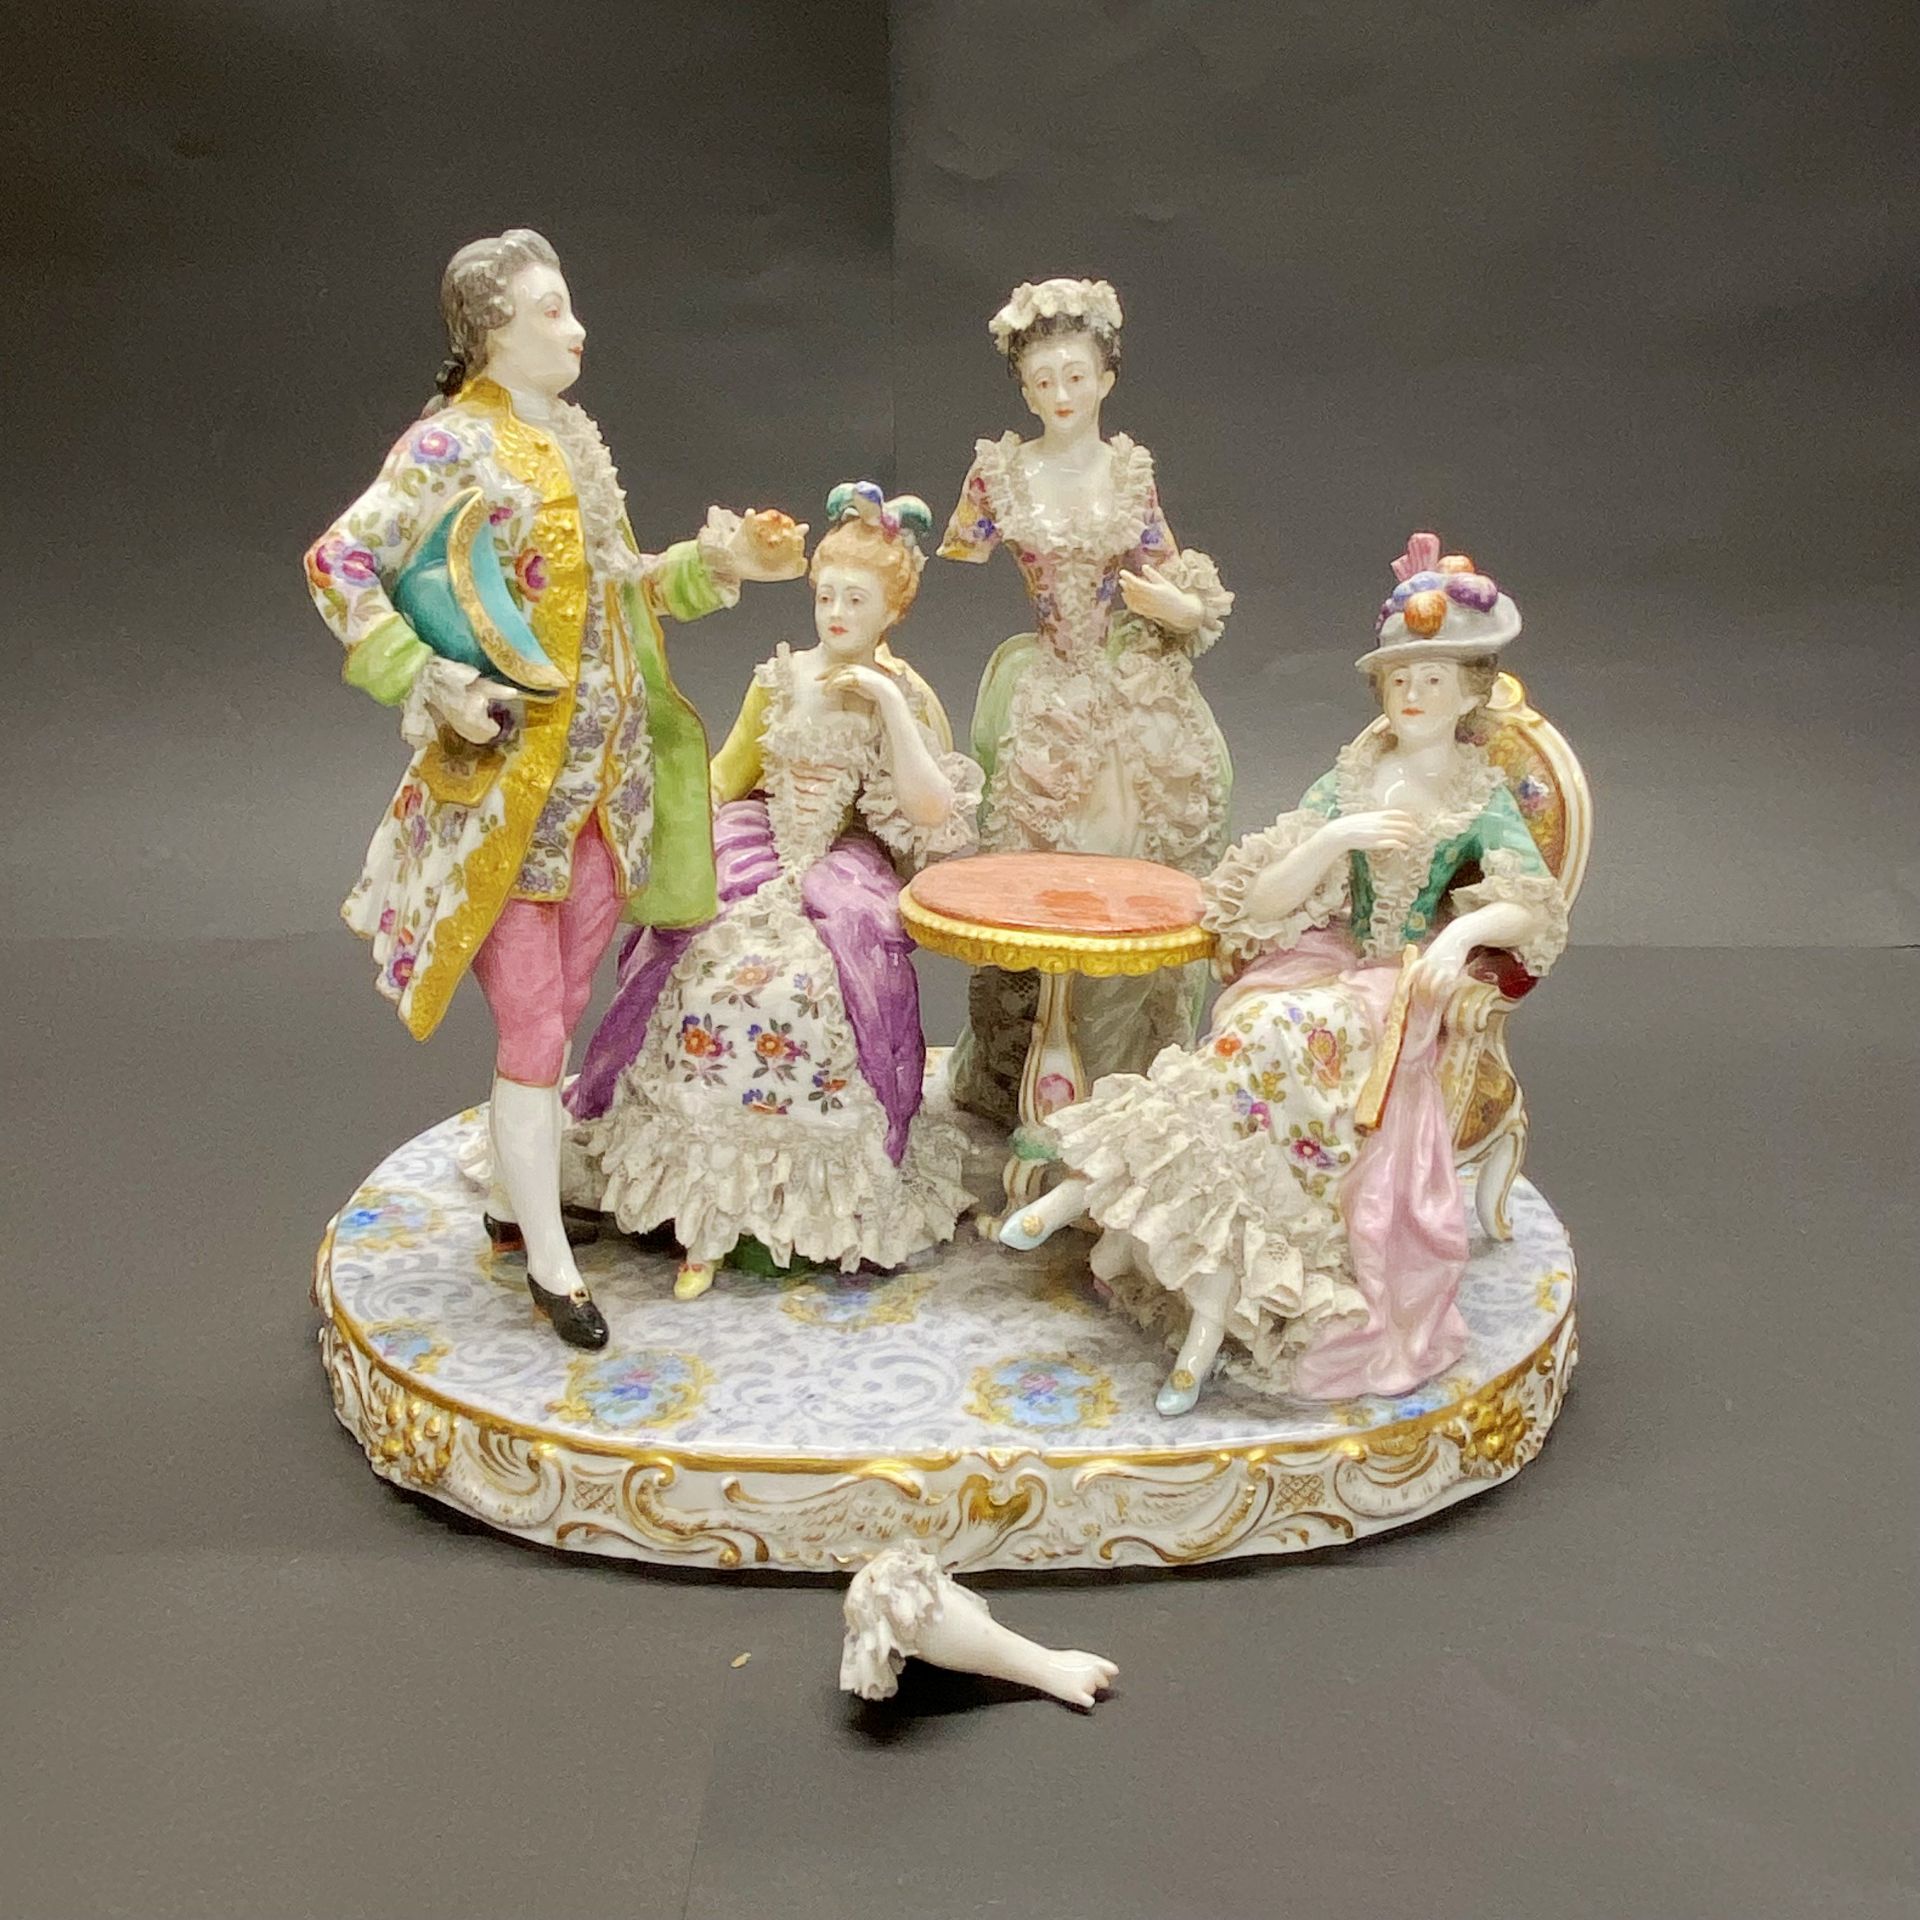 A 19thC German porcelain figure group. W. 29cm x H. 25cm (A/F)